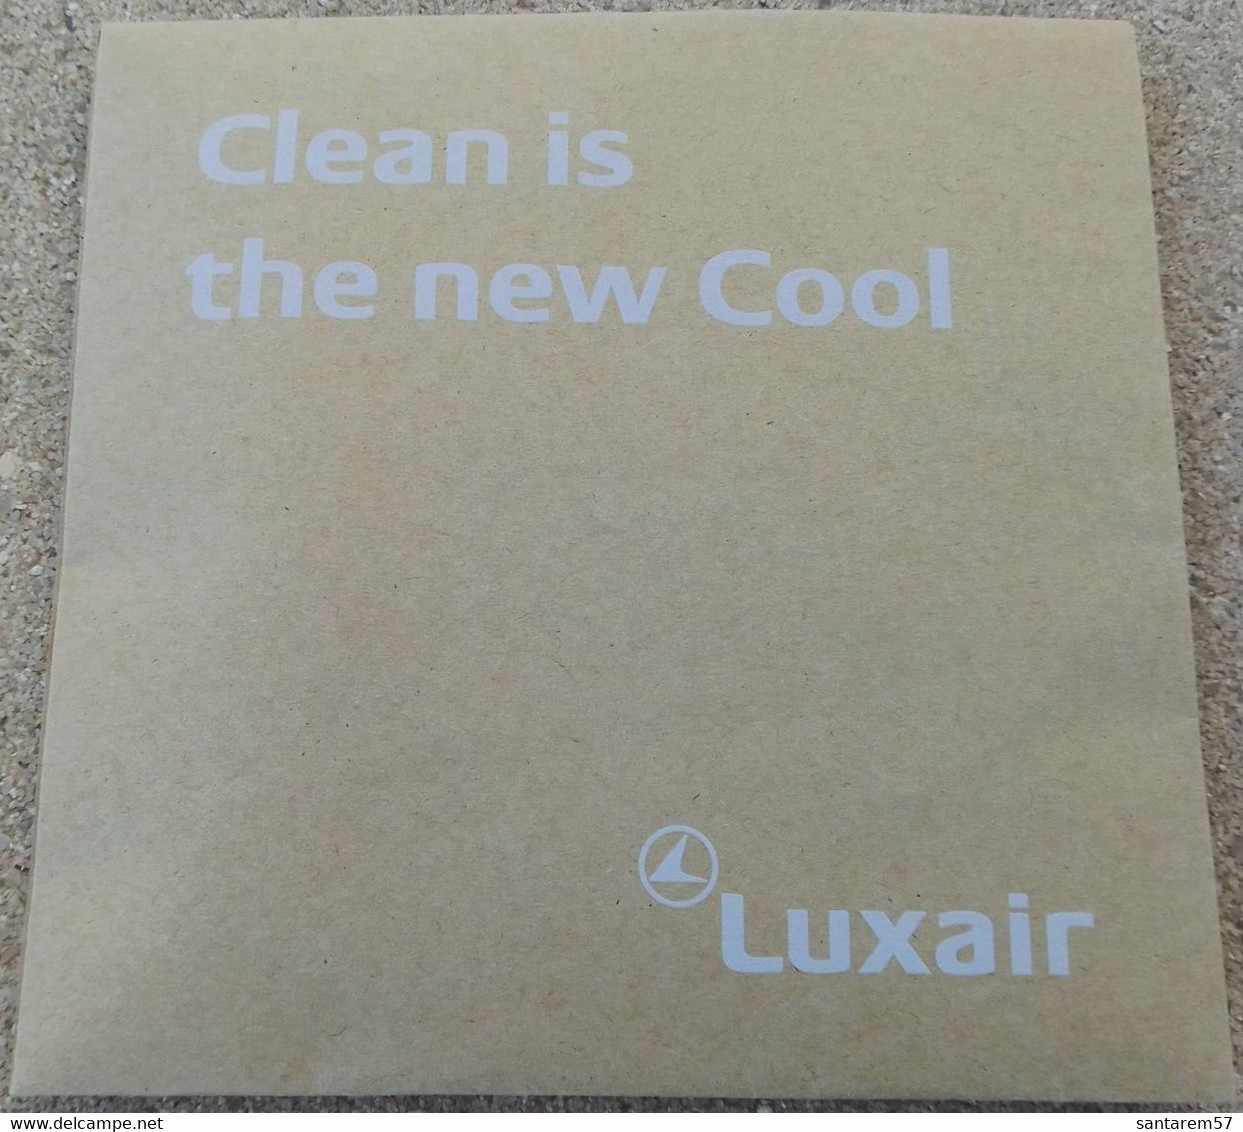 Luxair Pochette Traveller Kit Hygiène Clean Is The New Cool - Publicités